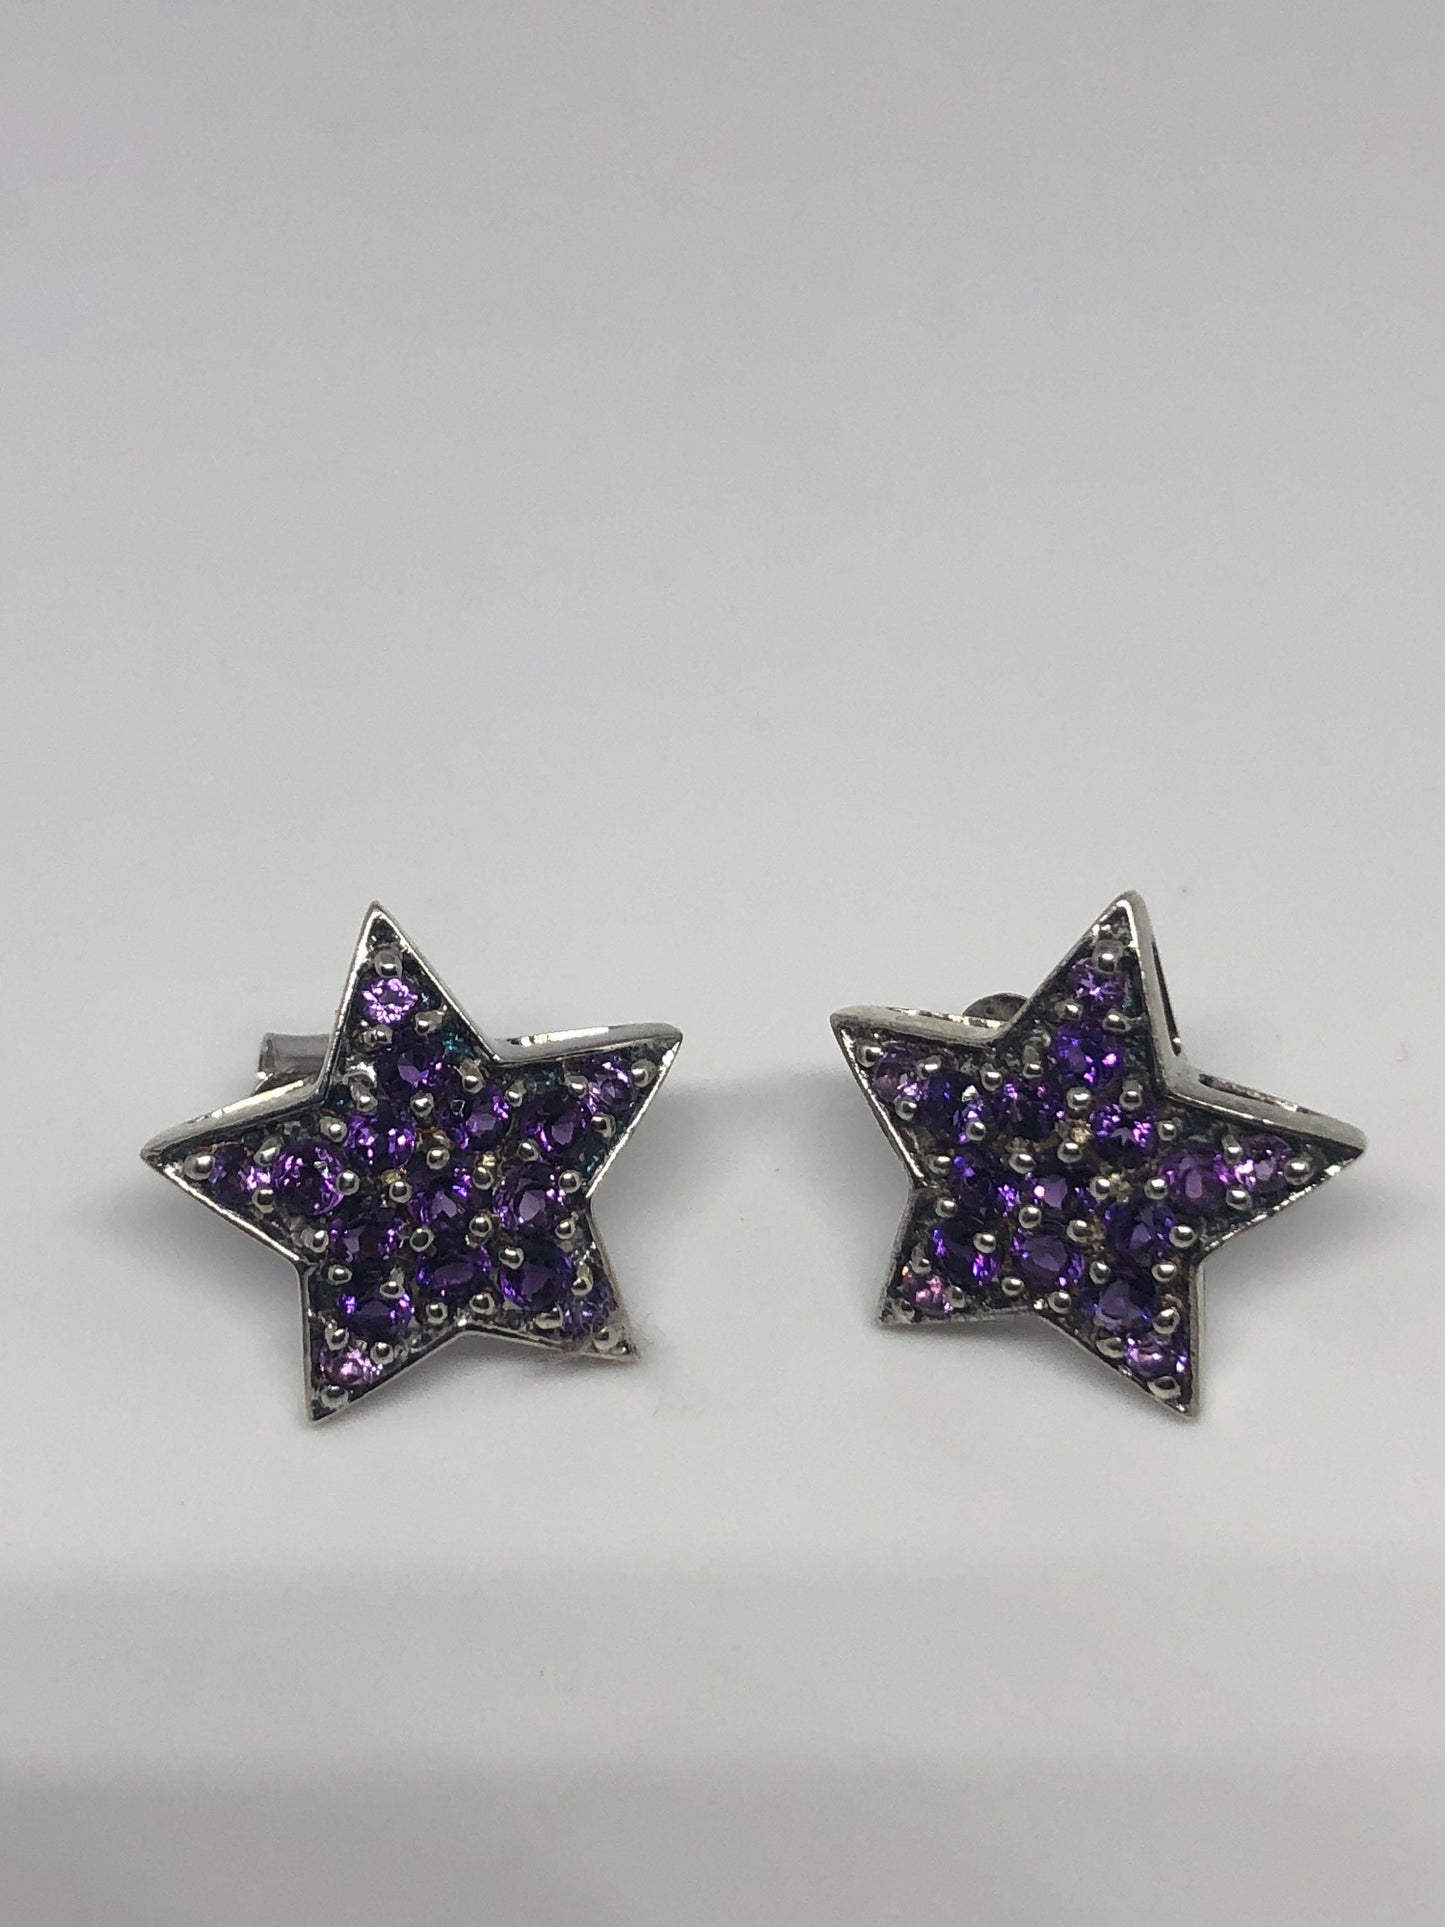 Vintage Amethyst Star Earrings 925 Sterling Silver Purple Stud Button